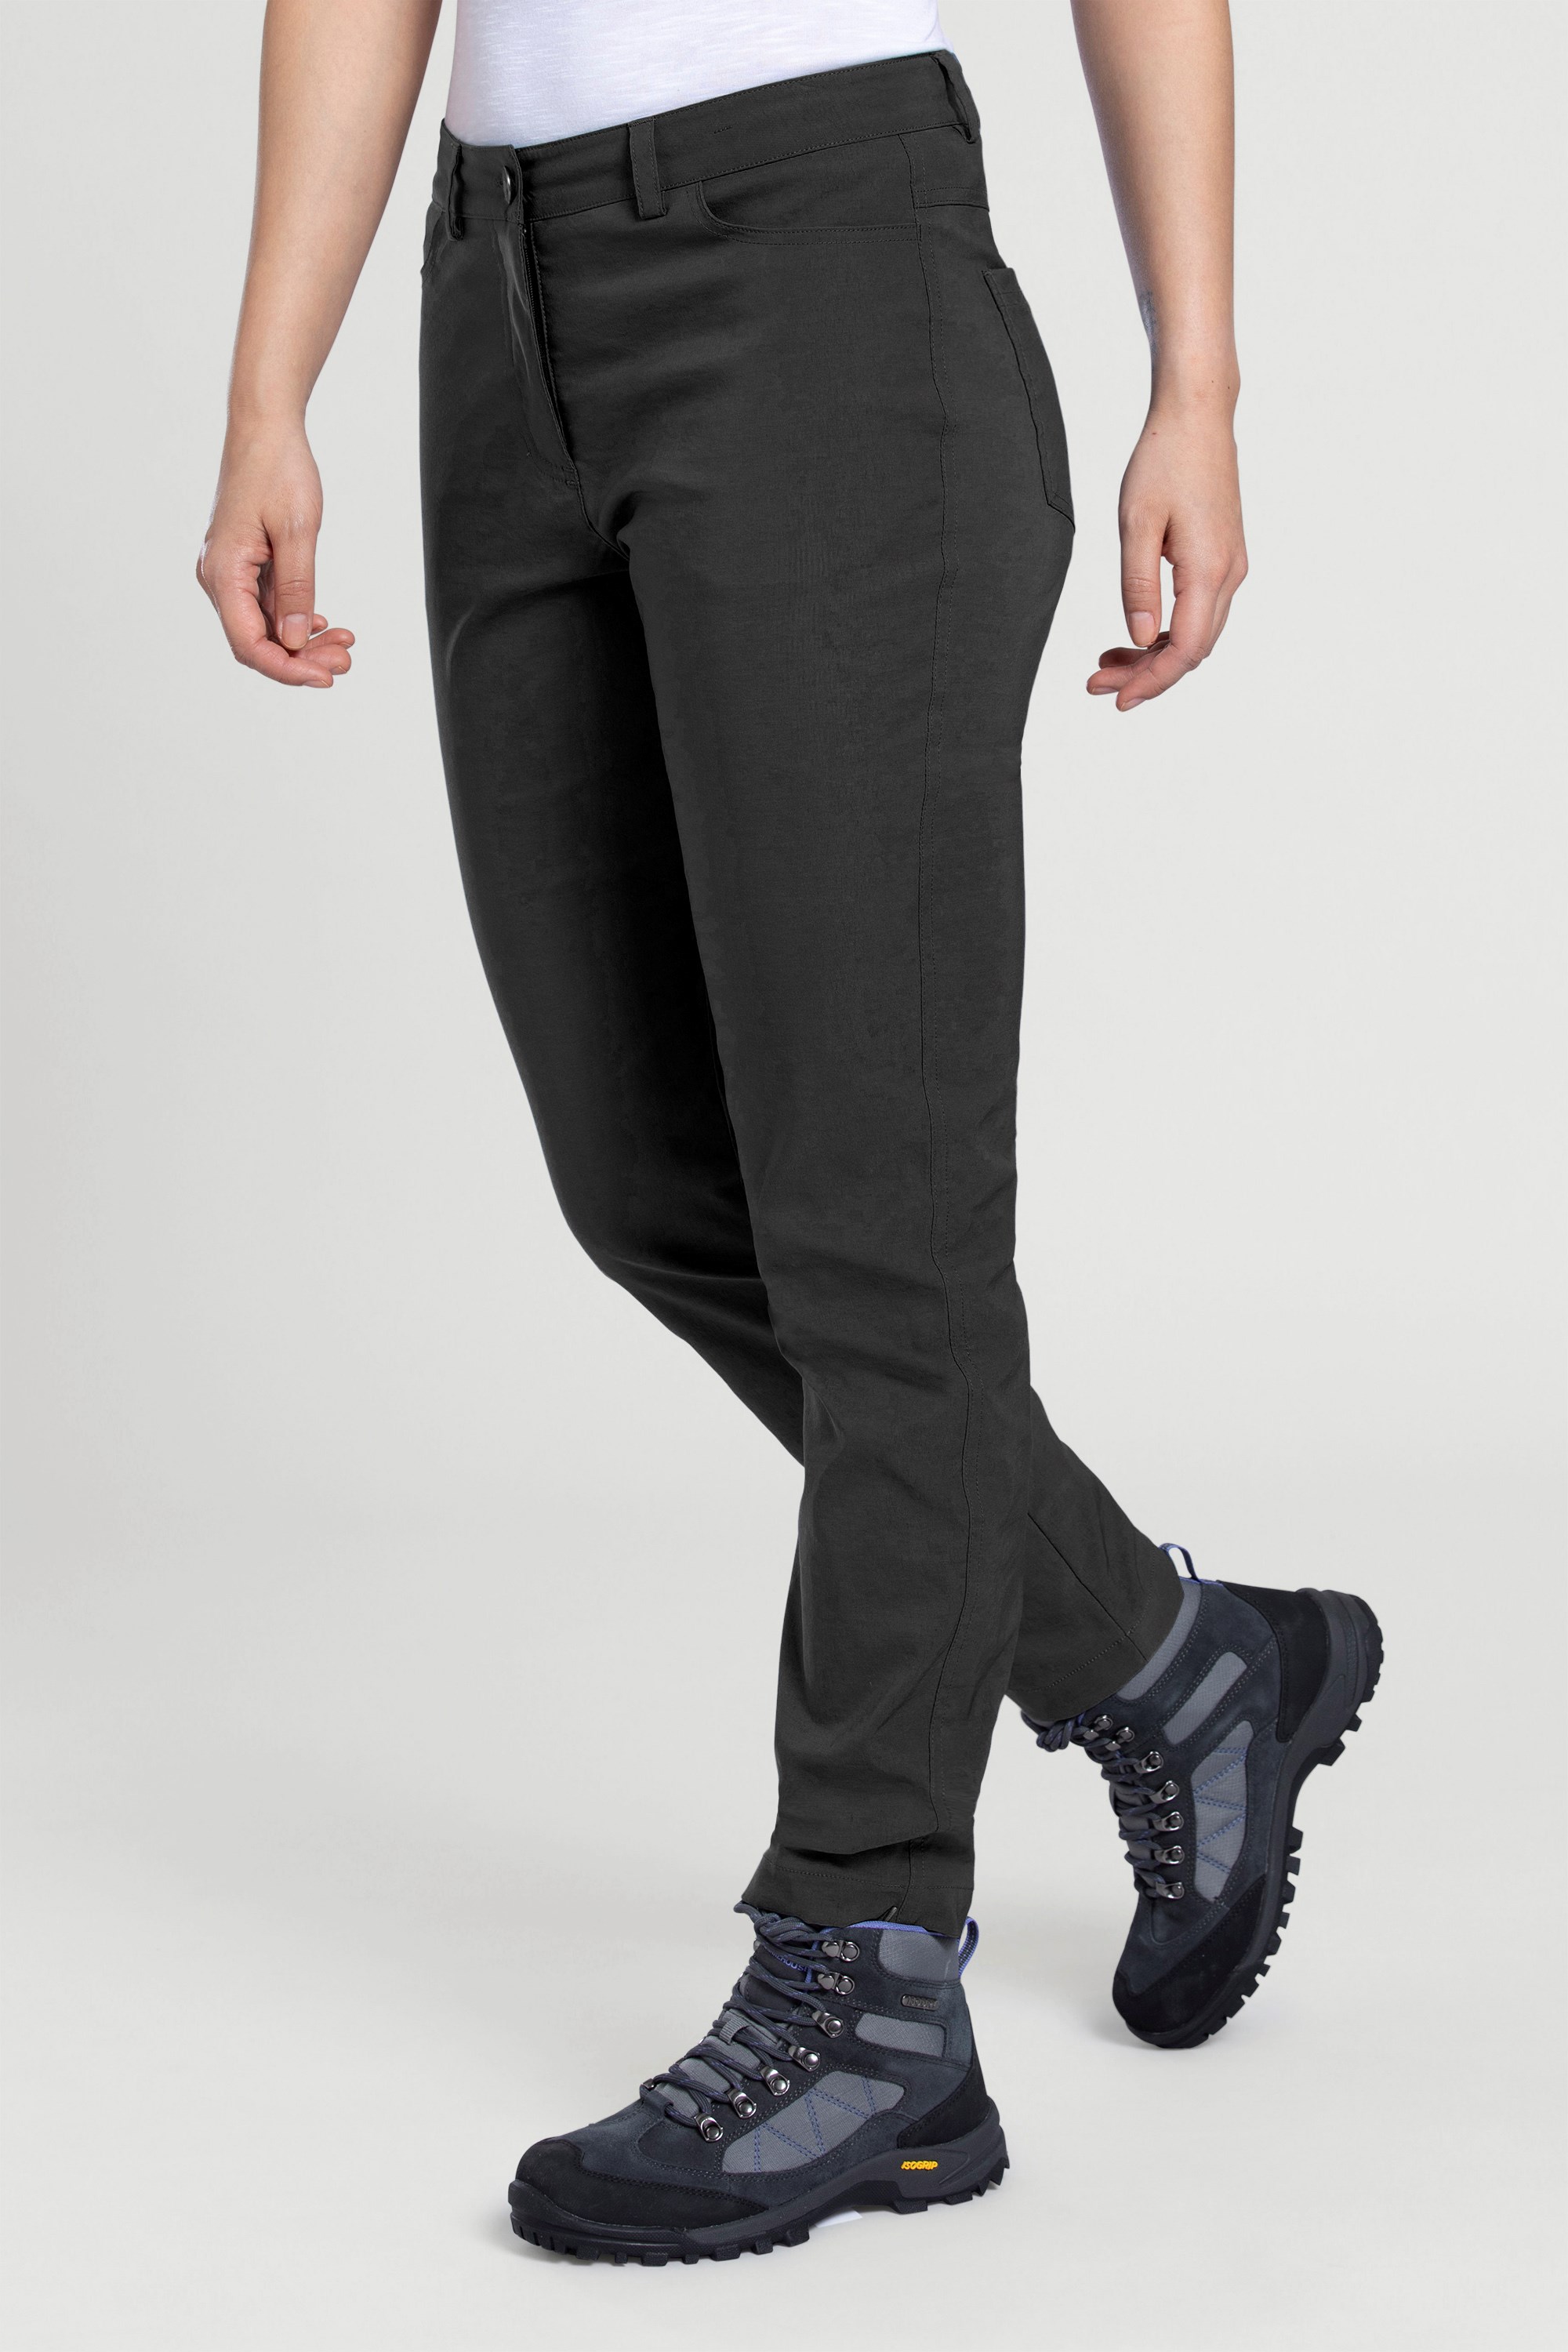 Stride Ultra-light Slimline Womens Trousers - Short Length - Black